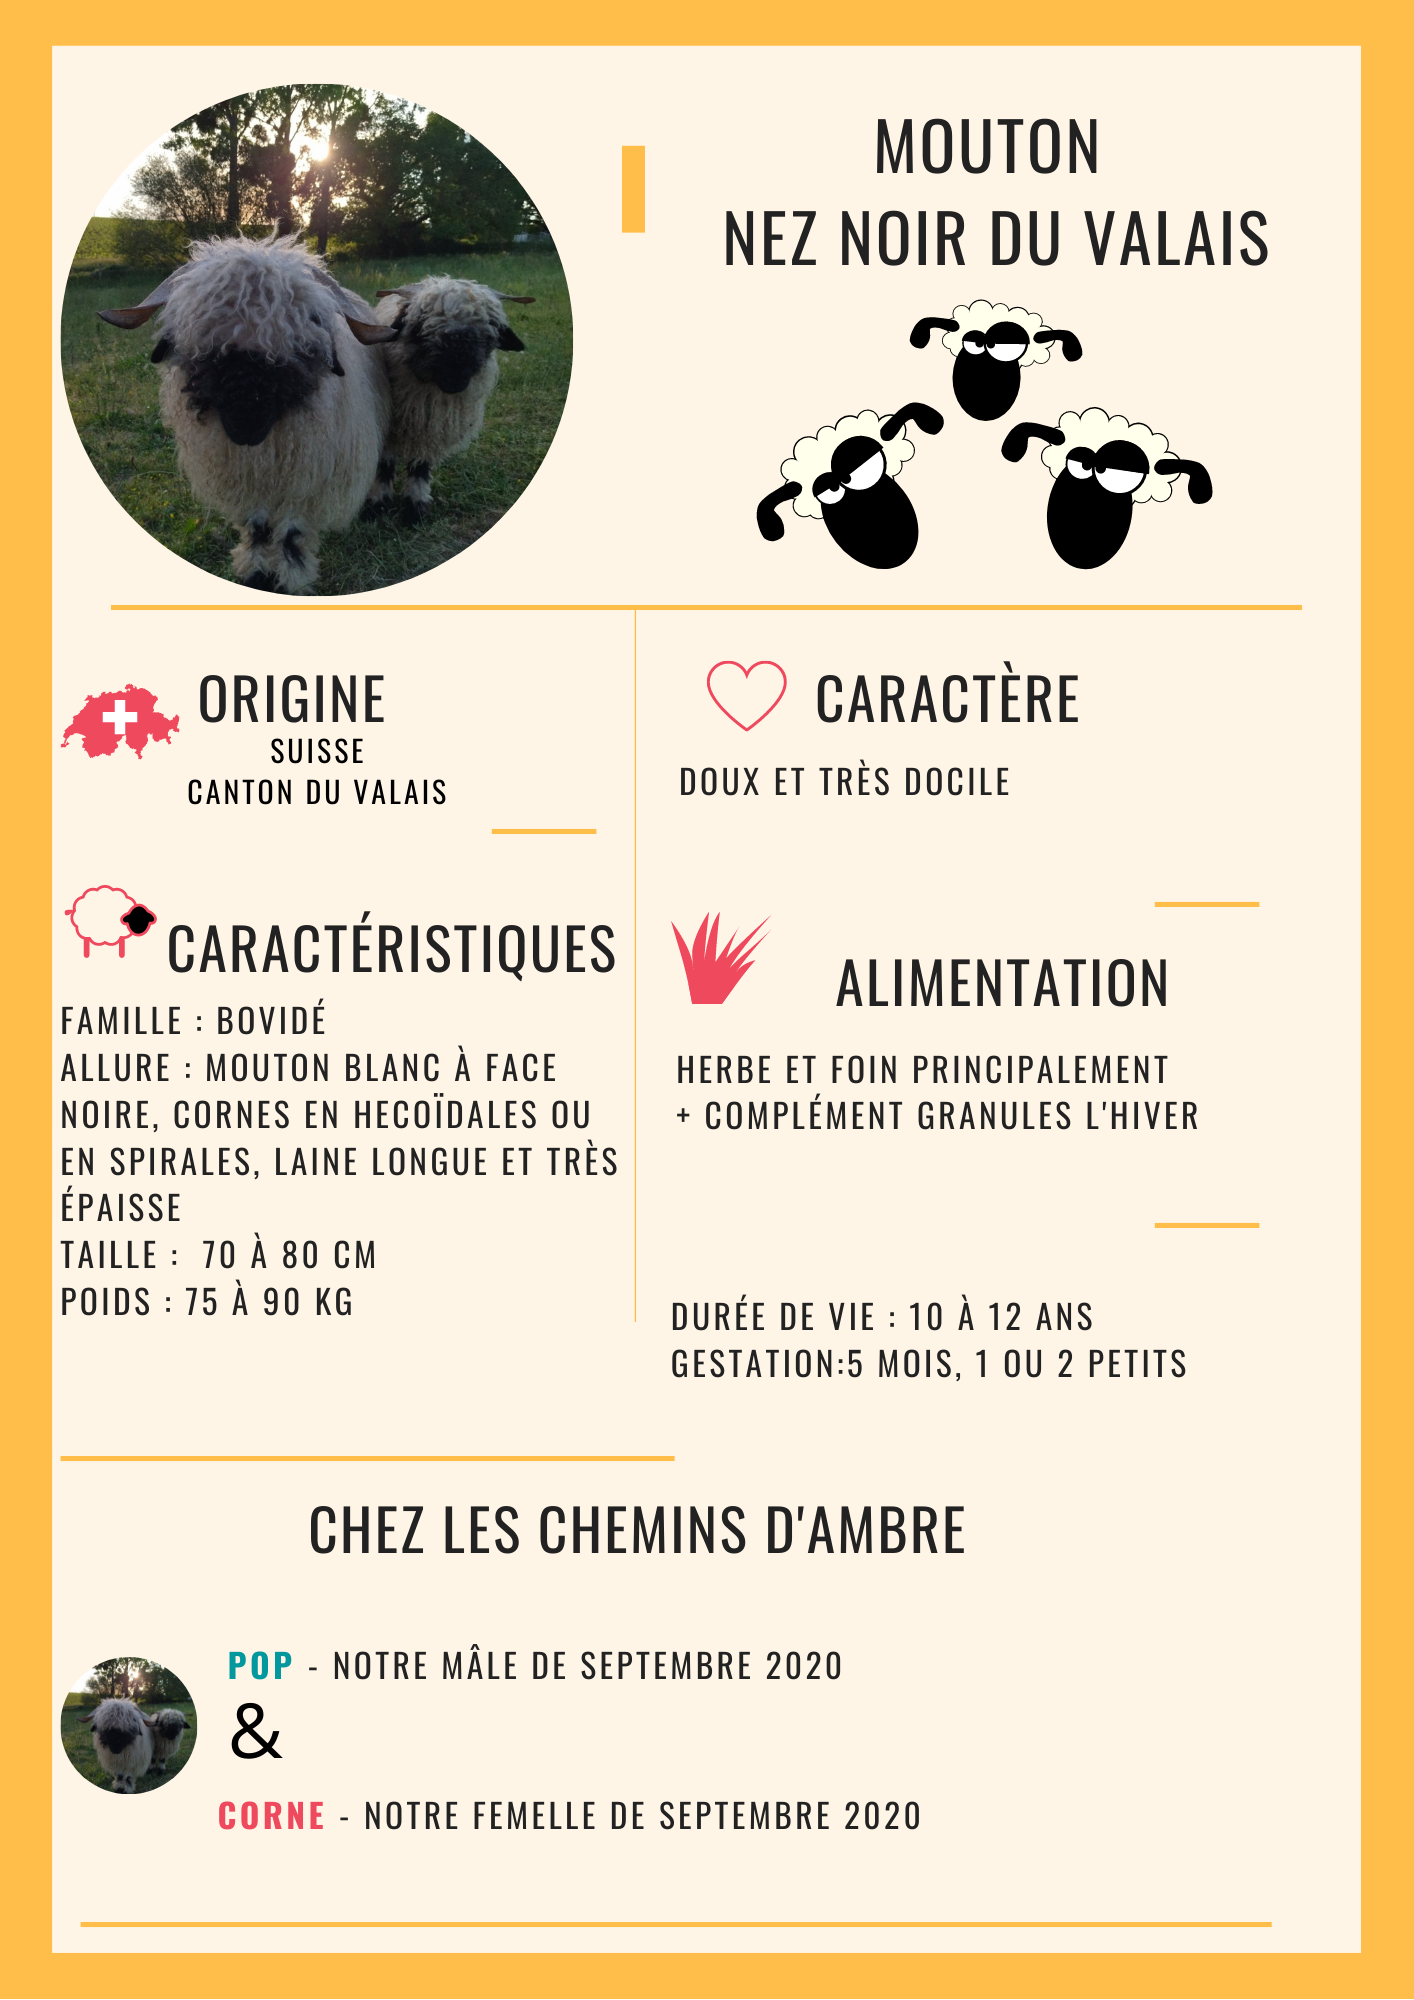 Mouton Nez Noir du Valais